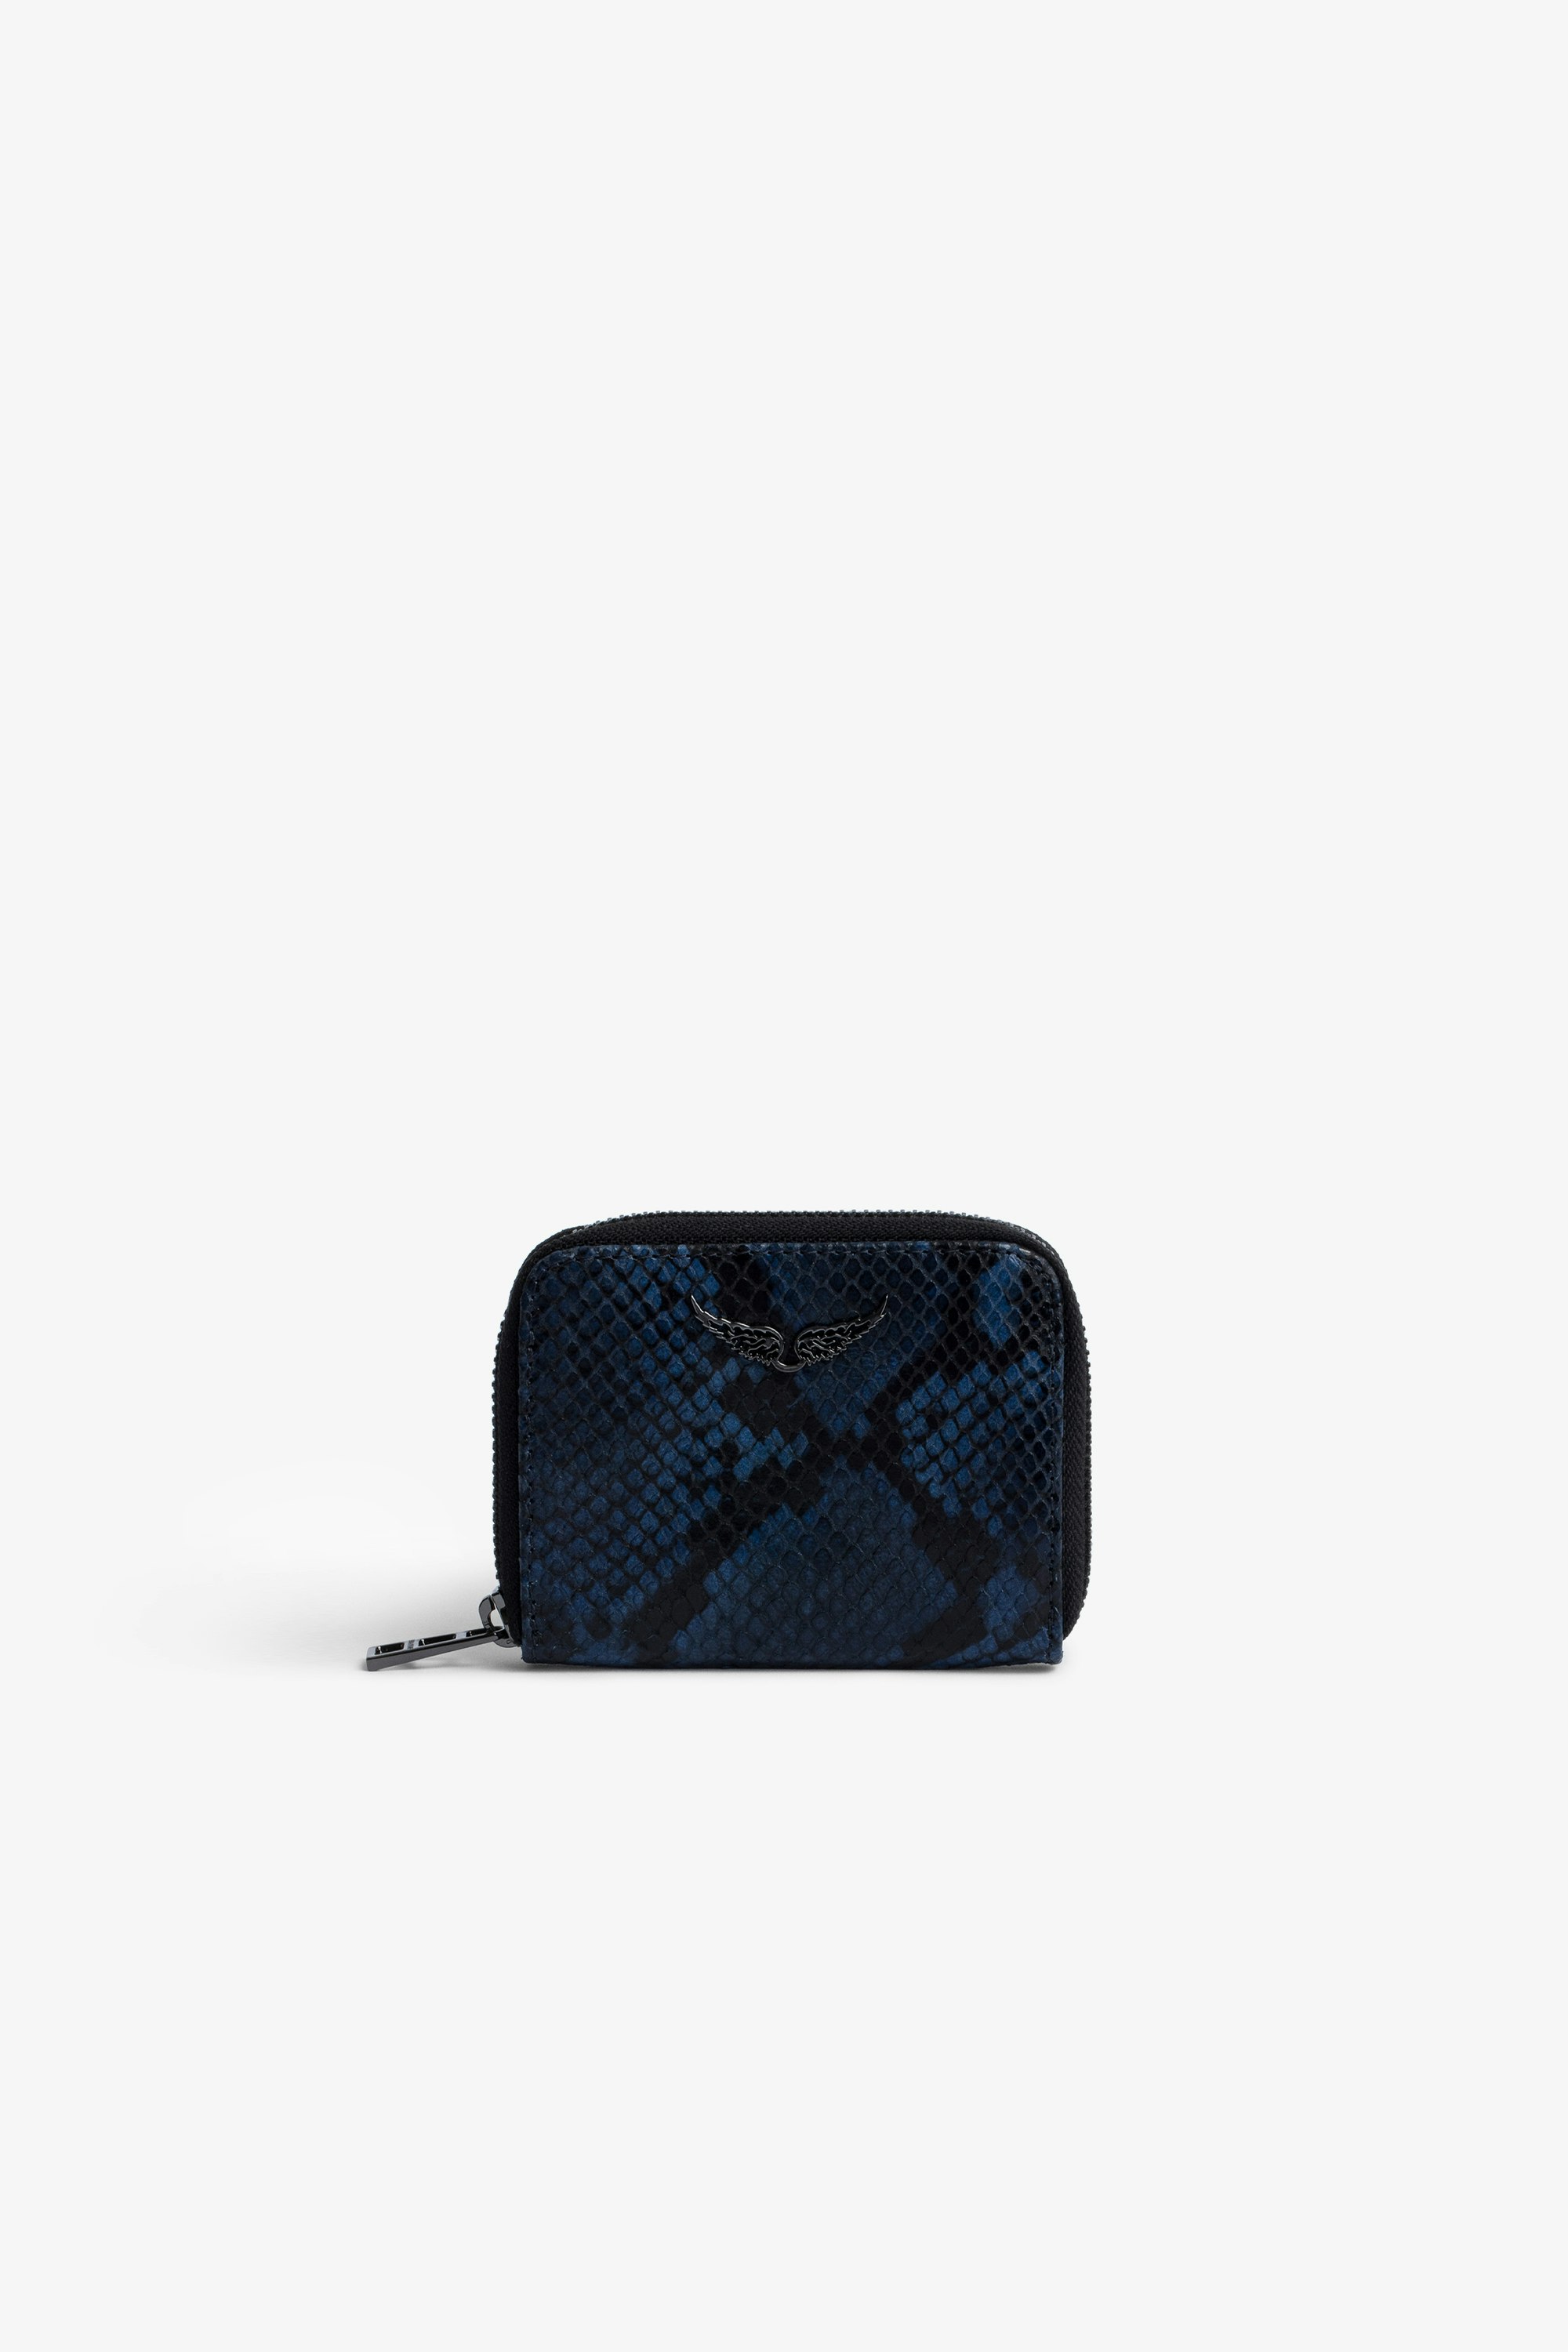 Porte-Monnaie Mini ZV Porte-monnaie en cuir effet python bleu et noir femme